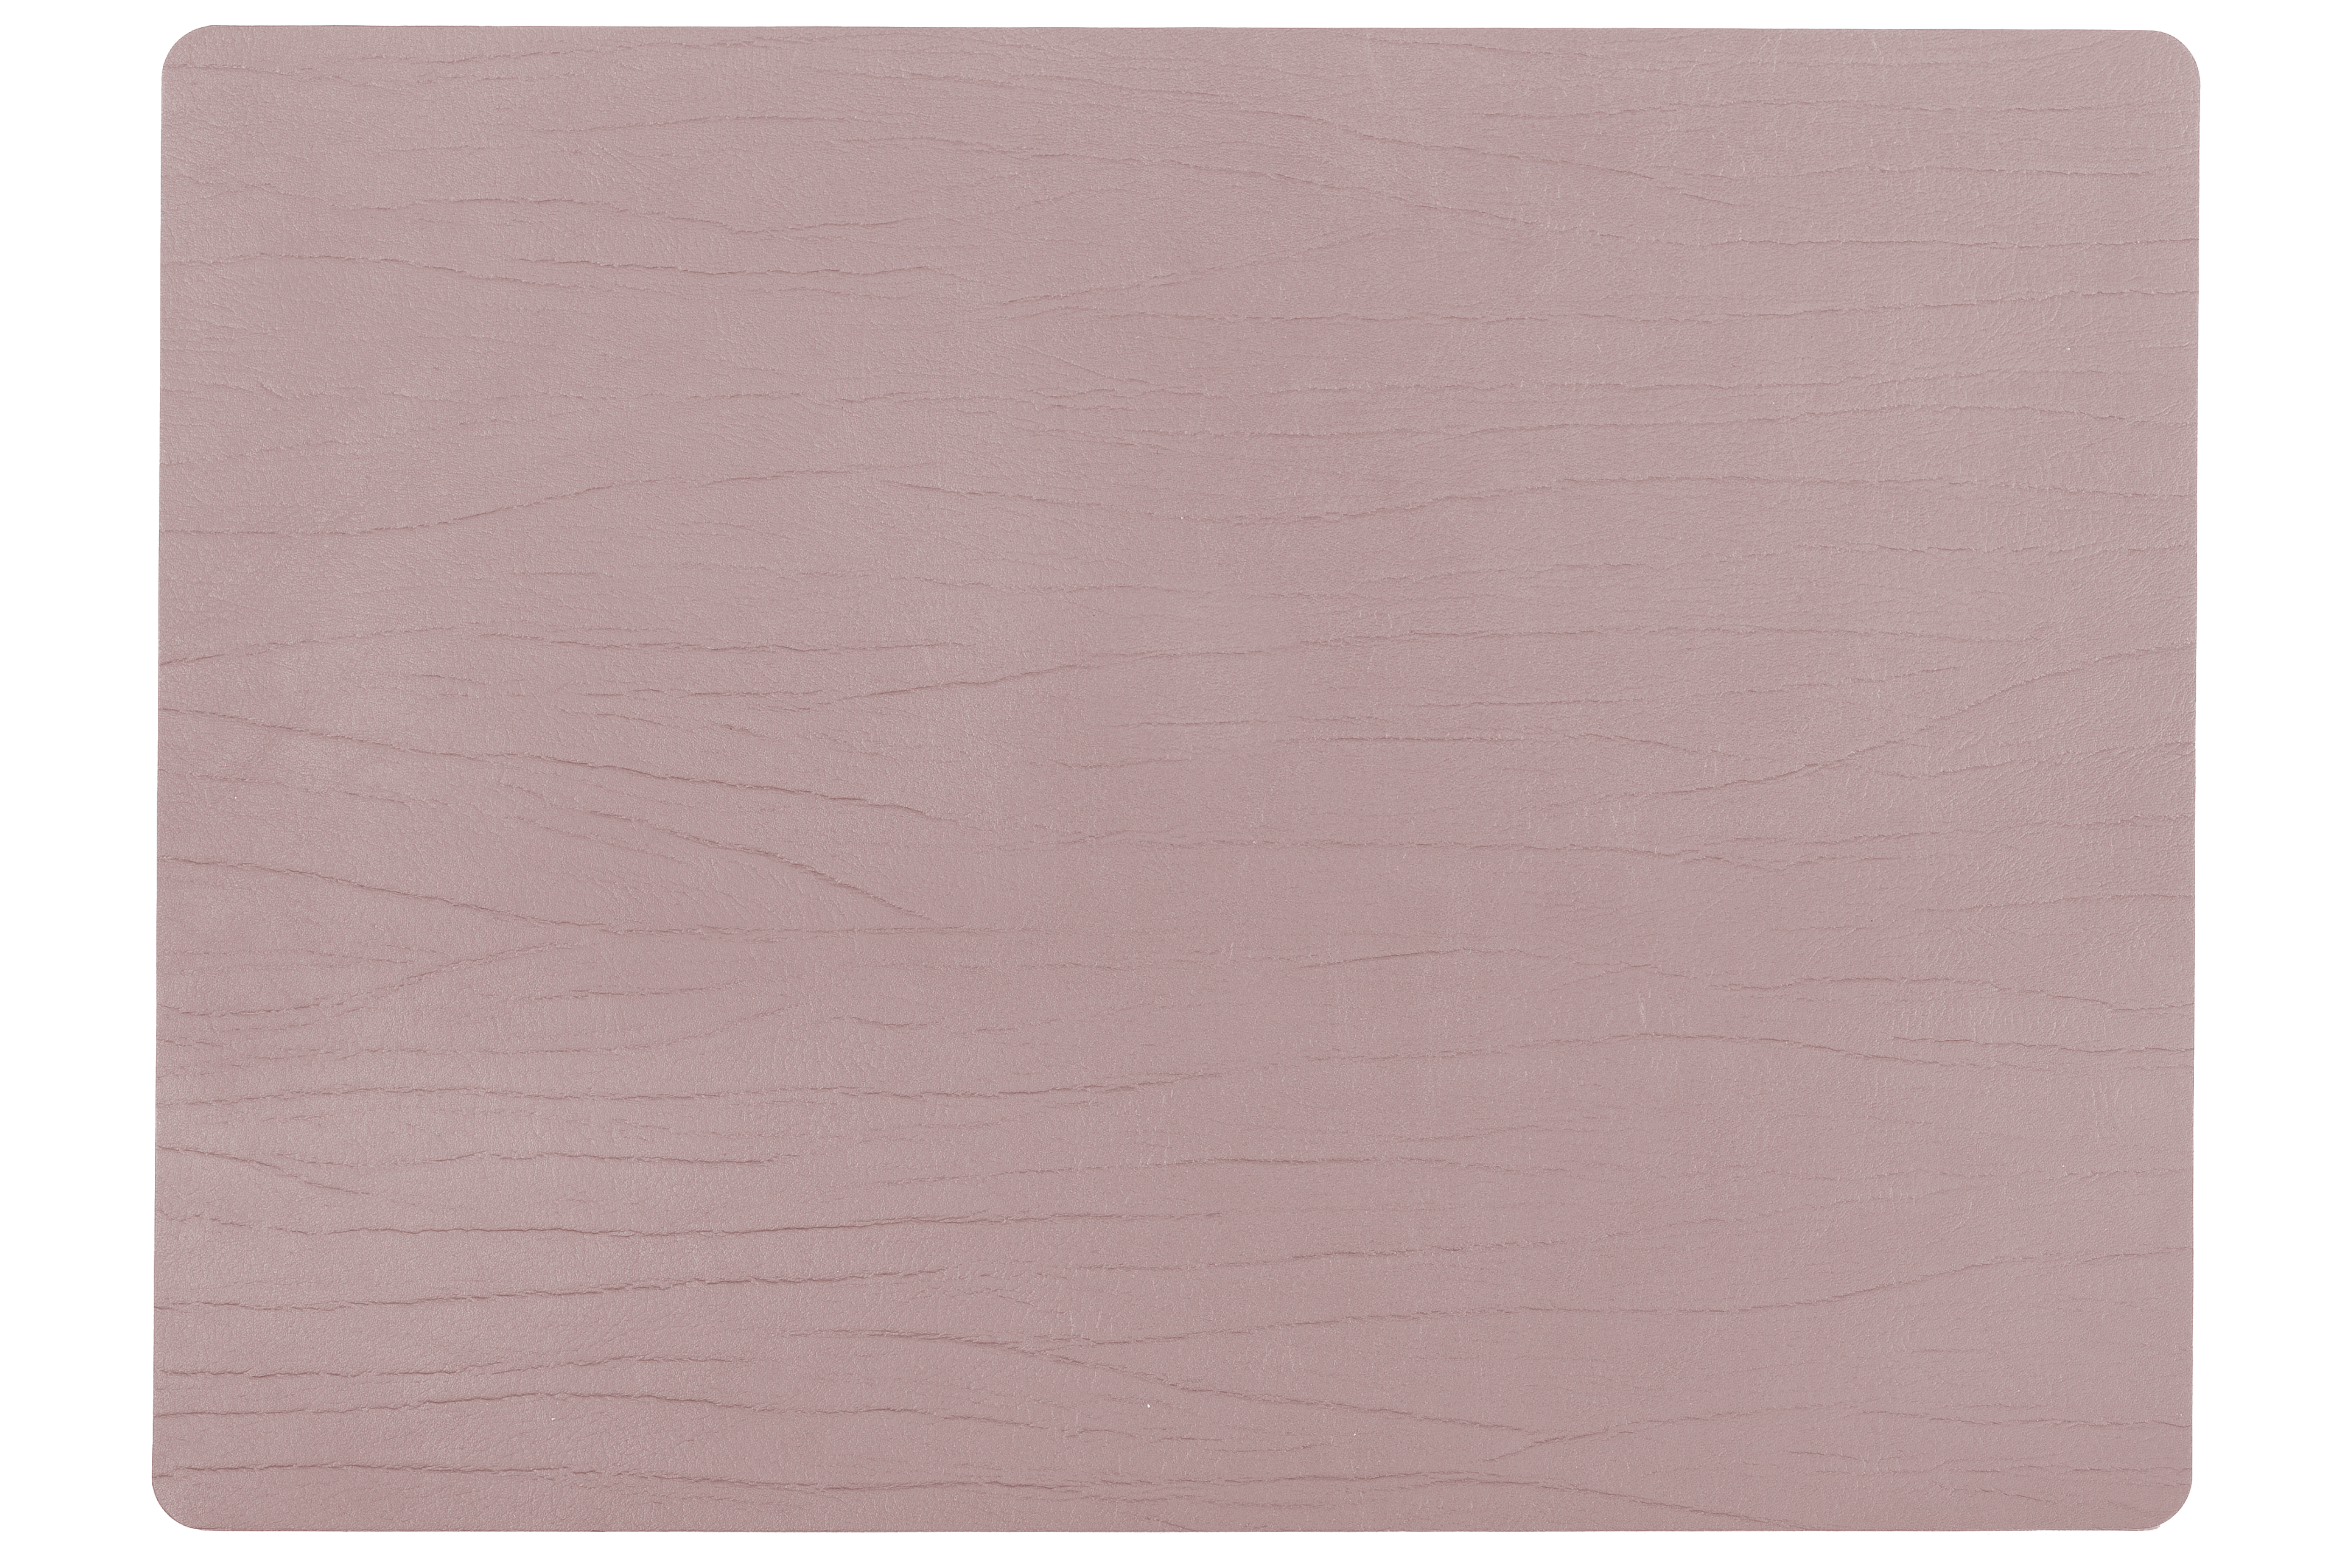 Titan placemat rectangular, 33x45cm, mauve double sided